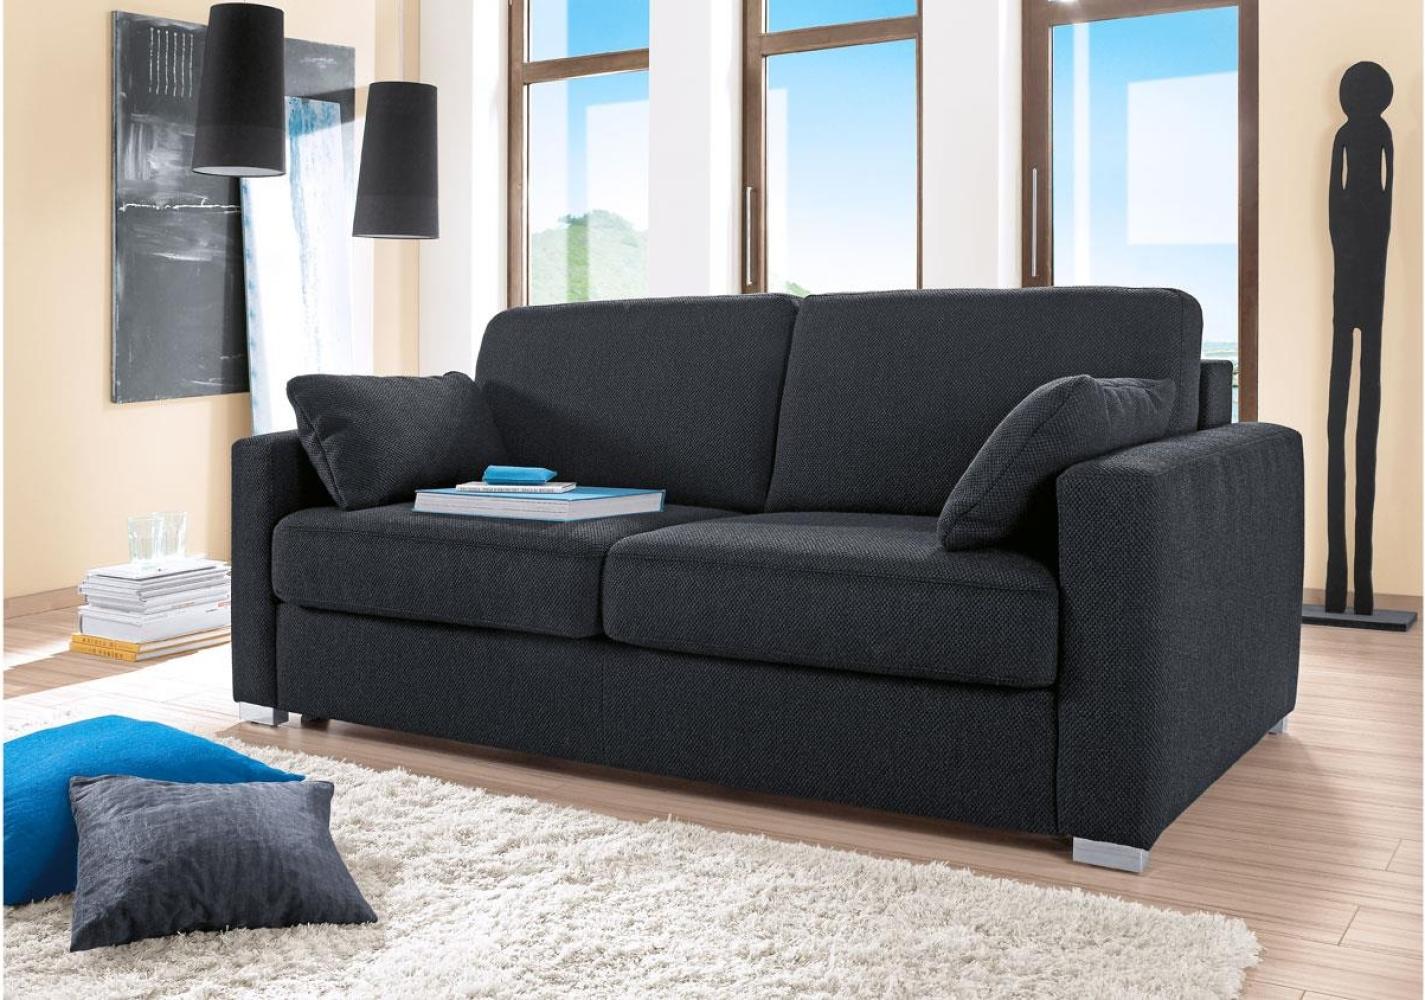 Sofa TESO 2-Sitzer Stoff anthrazit mit Federkern Bettkasten Bild 1